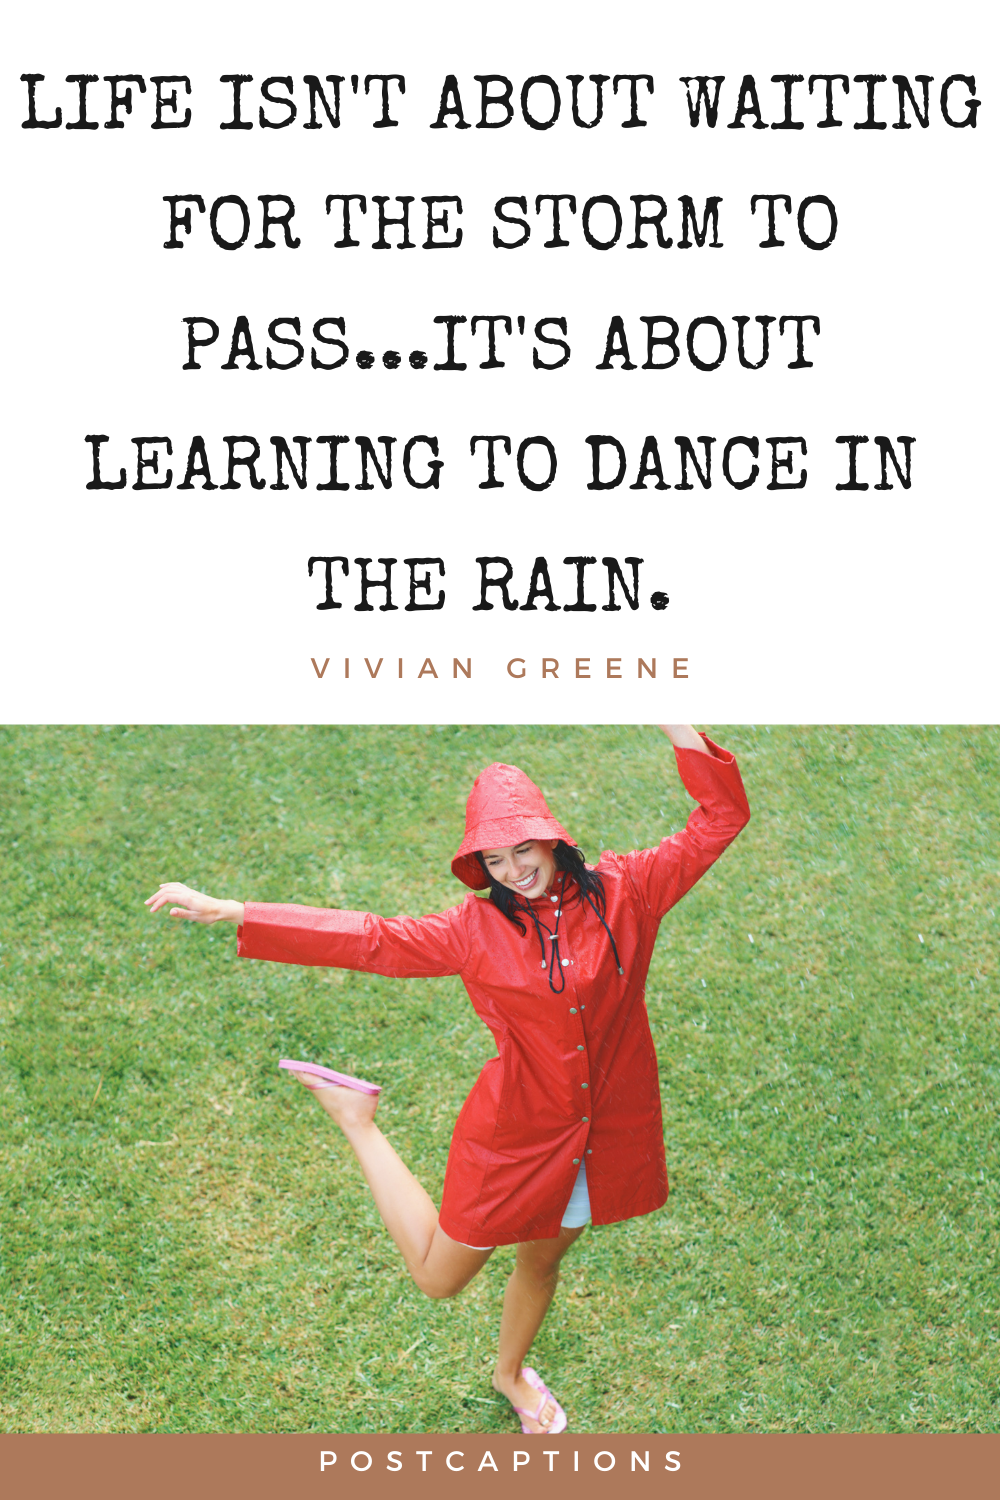 Rain quotes for Instagram